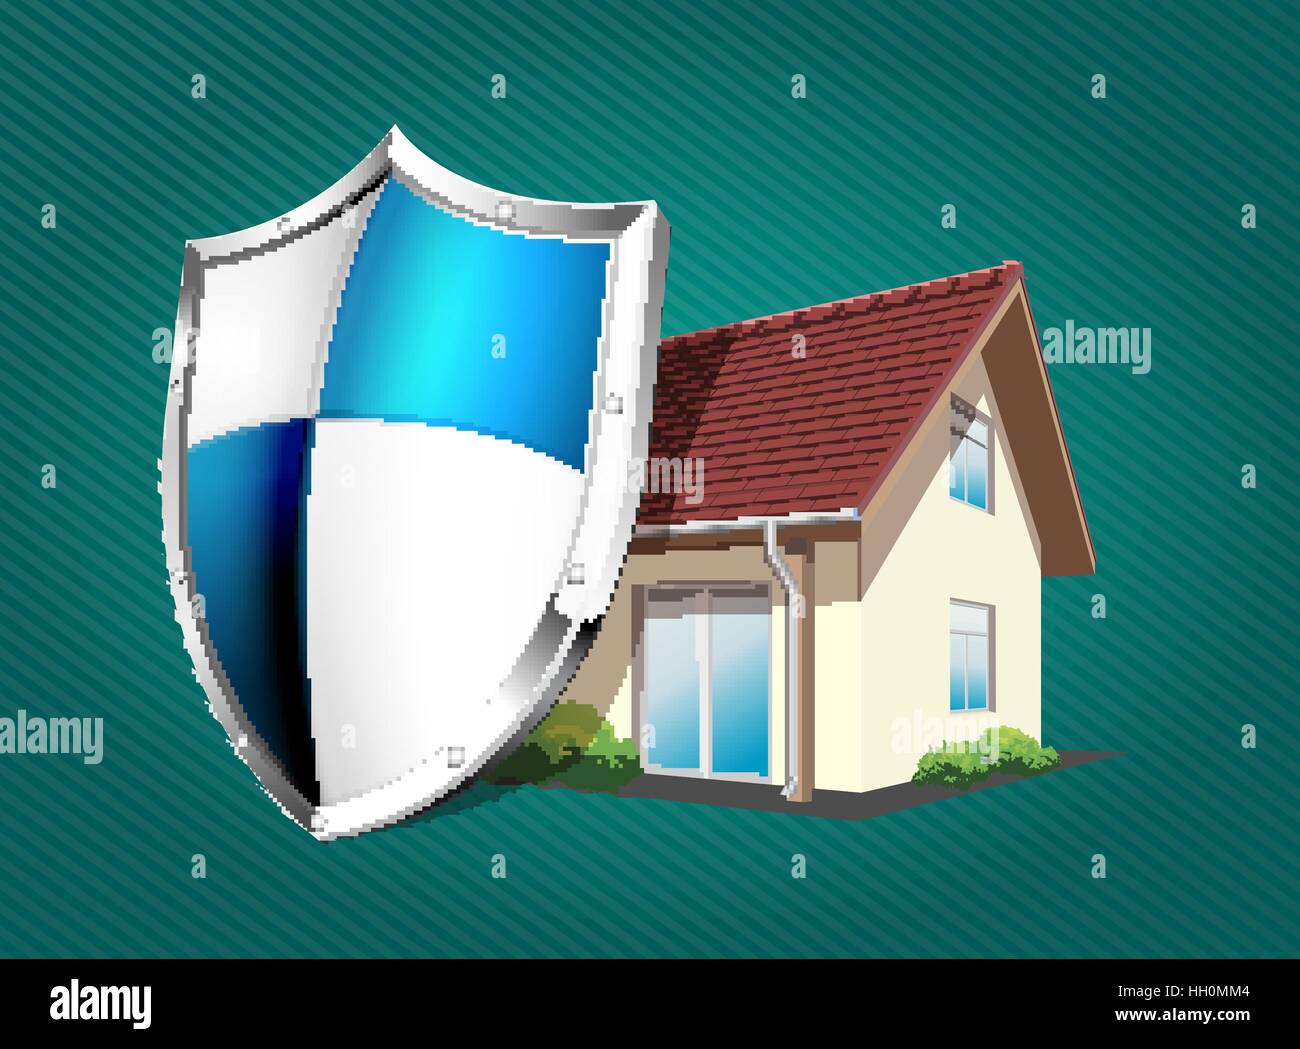 Chambre avec protection thermique et CCTV - Accueil Concept de sécurité Illustration de Vecteur